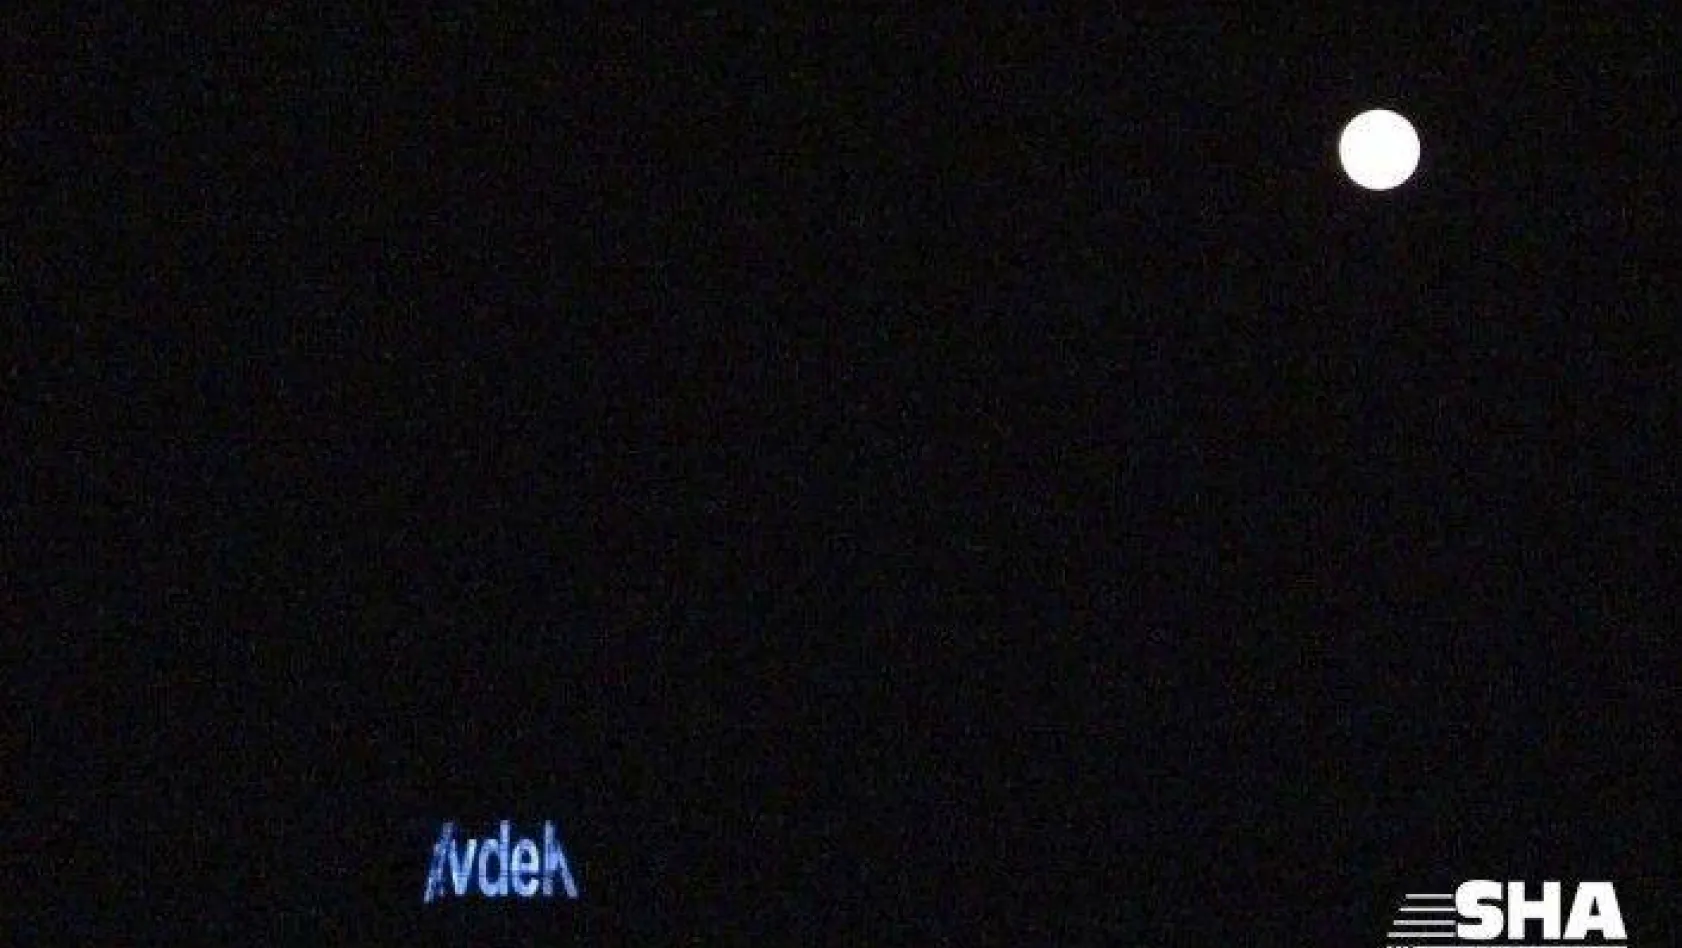 İstanbul'da Süper Ay 'Evde kal' yazısıyla görüntülendi